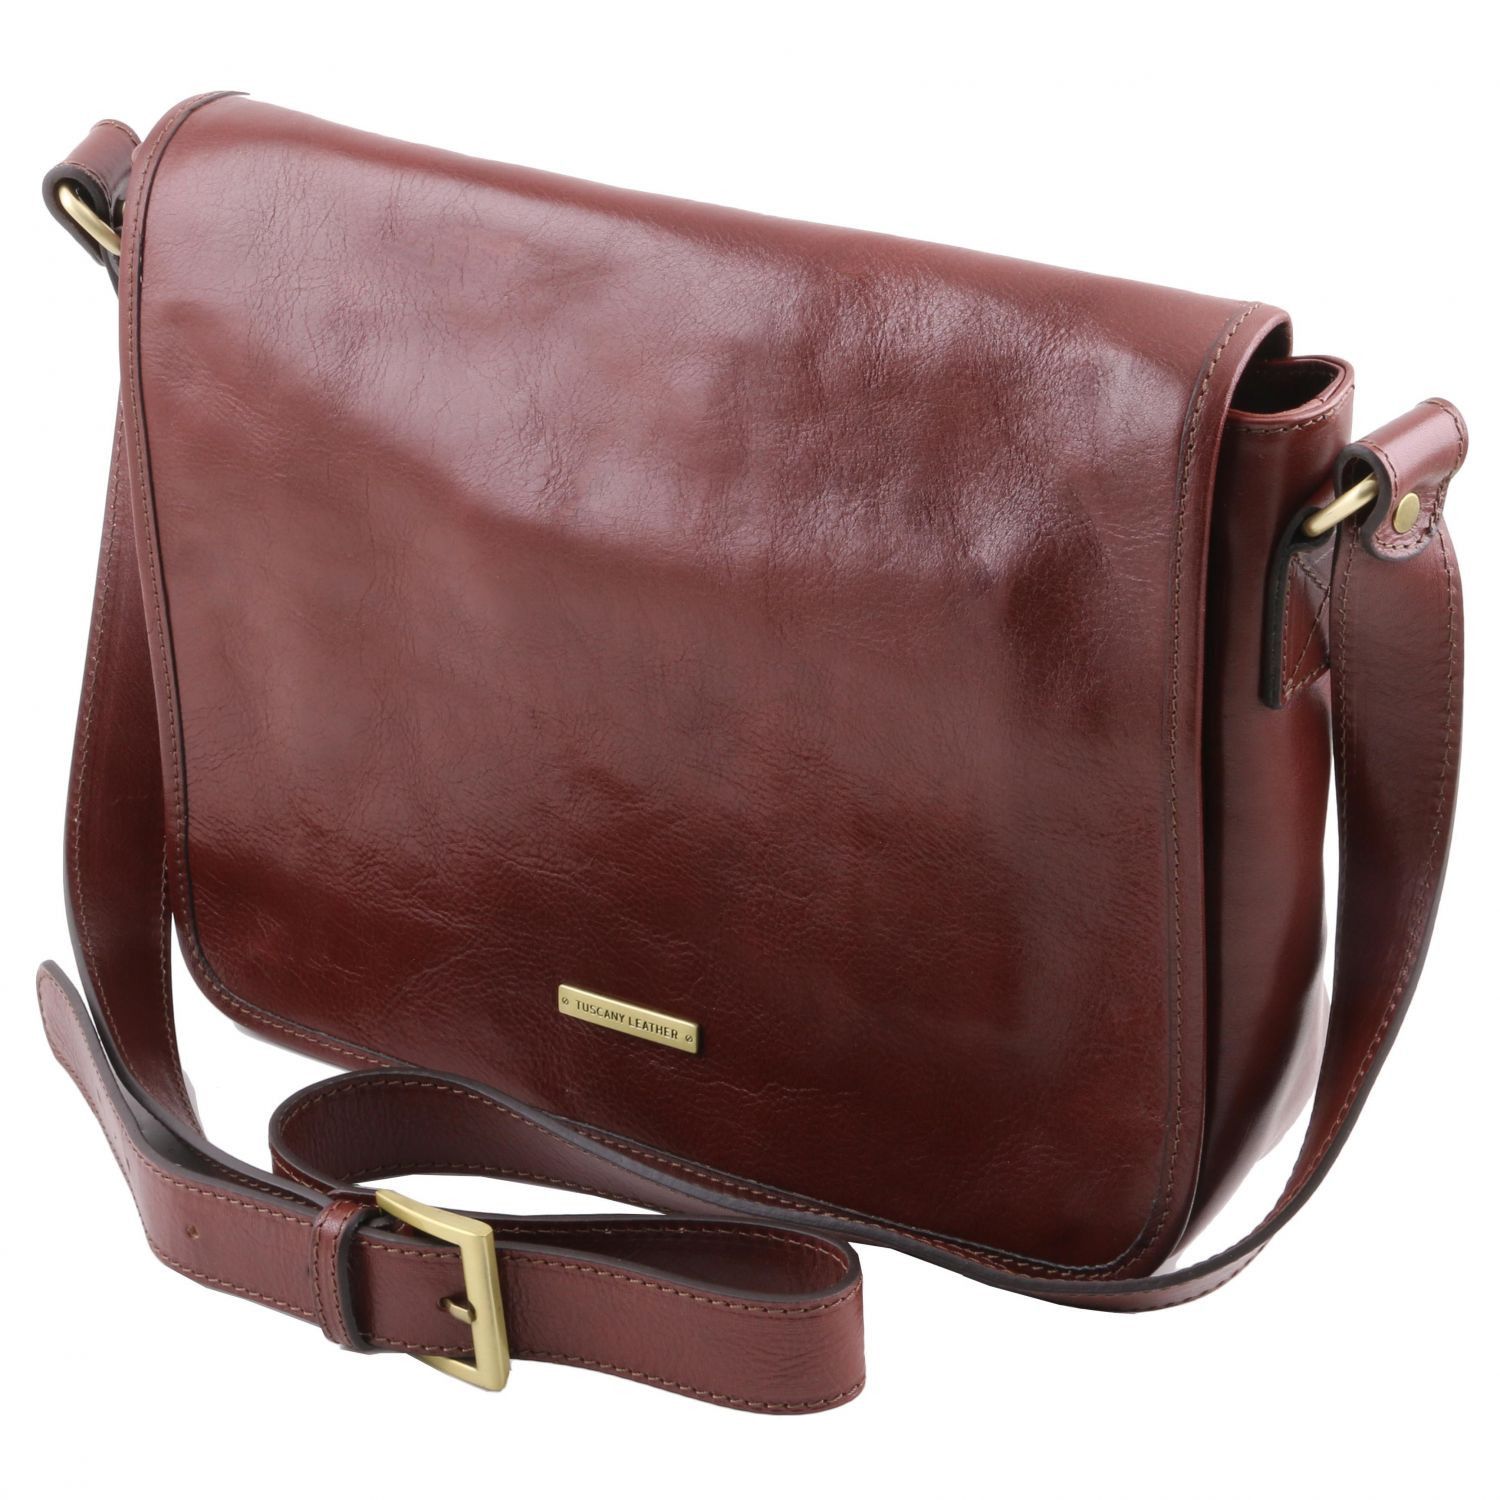 TL Messenger One Compartment Leather Shoulder bag Medium Size Dark Brown TL141301